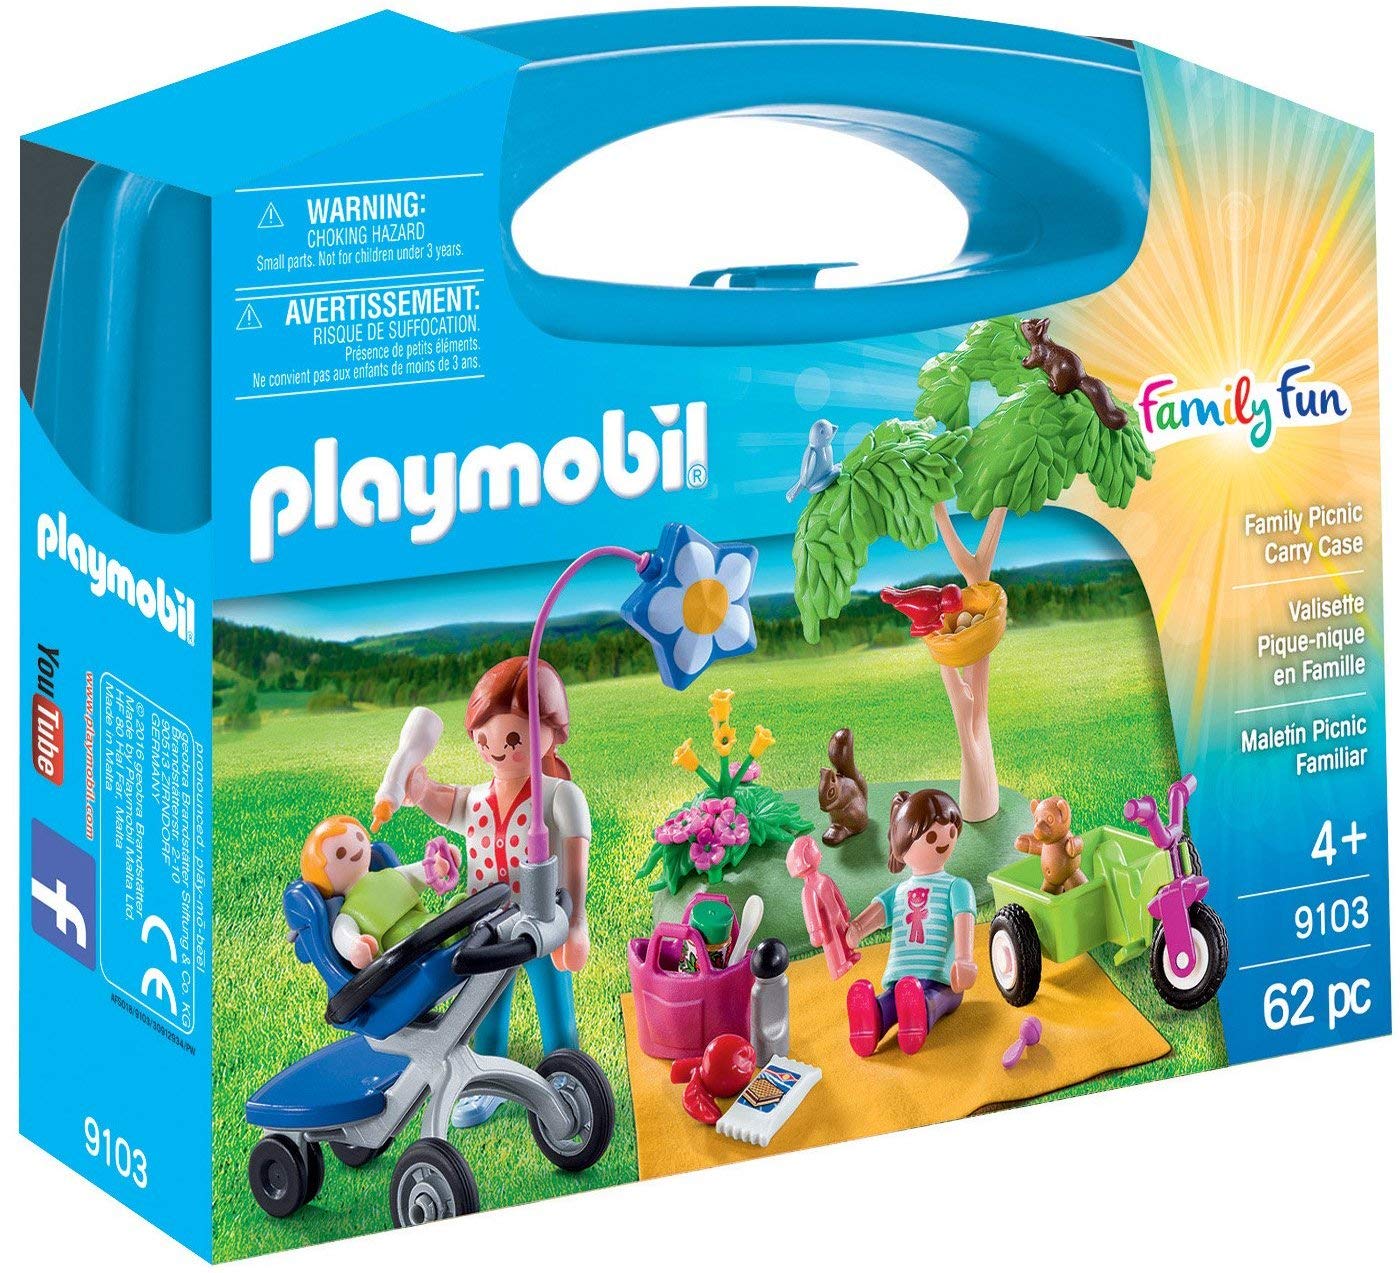 Playmobil Valisette Pique-Nique en Famille, 9103, Autre, Norme